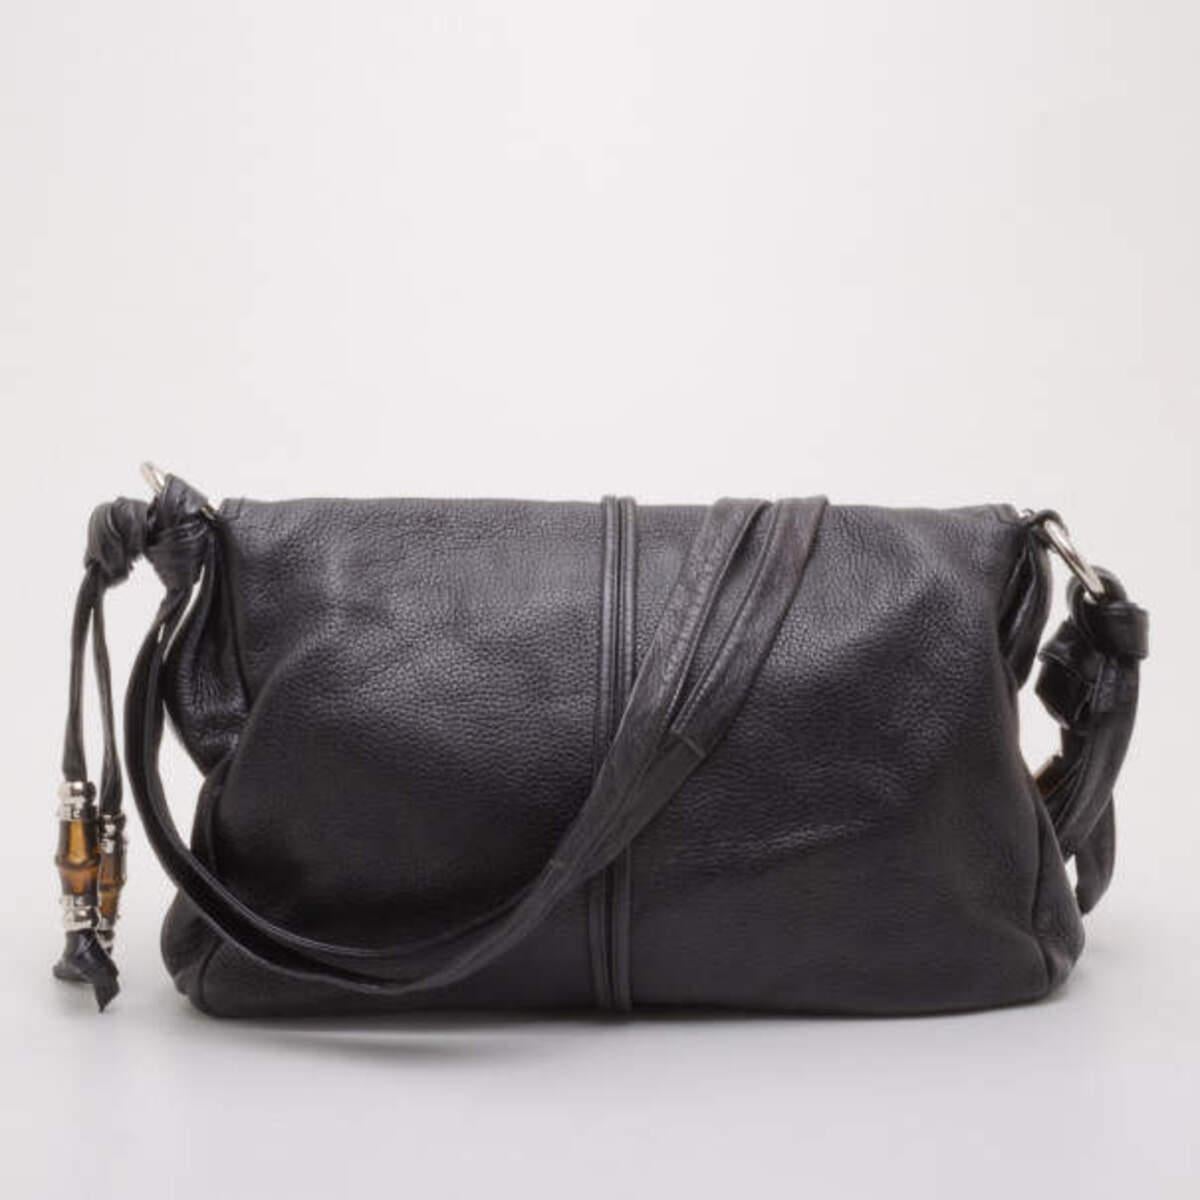 Le sac Jungling de Gucci n'est pas un sac à main noir comme les autres. Confectionné en cuir noir souple, il est rehaussé des accents de bambou emblématiques de Gucci, de houppes chics et de ferrures argentées. L'intérieur est doublé de toile